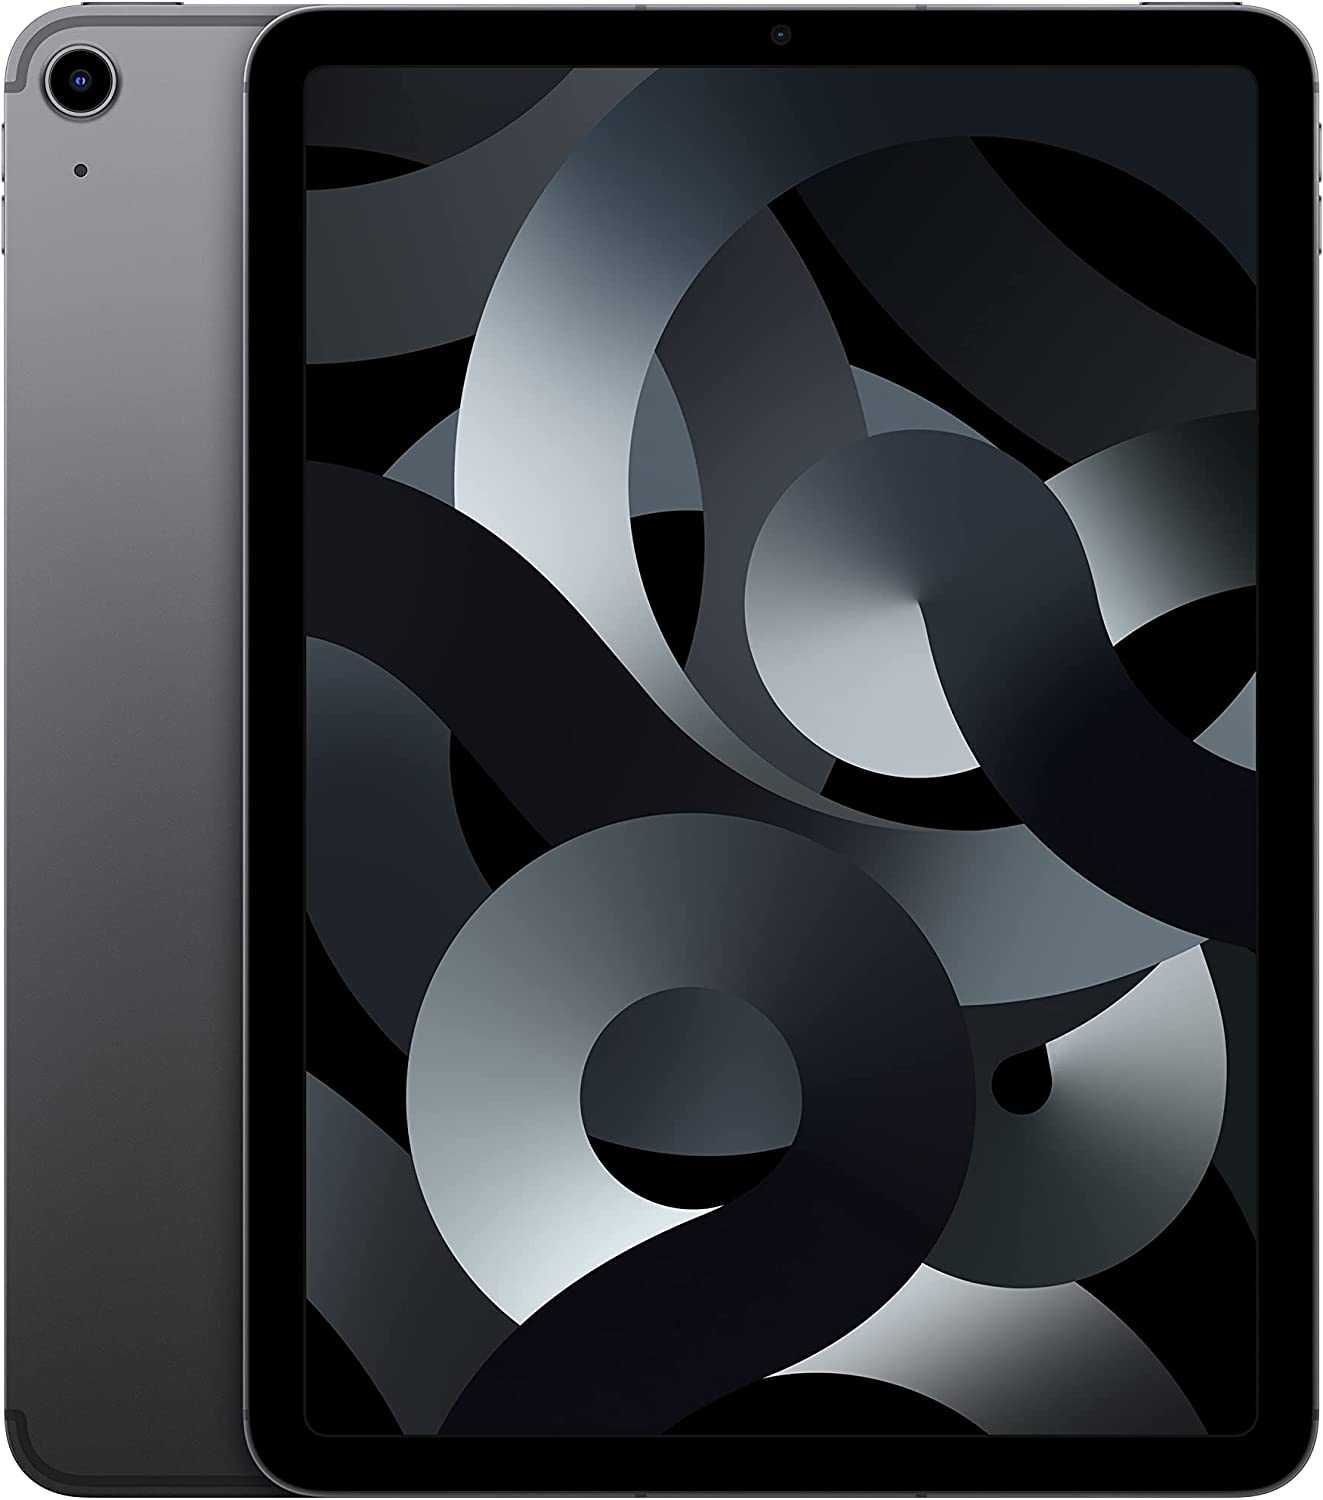 iPad Air M1 10.9" 64GB Wi-Fi + Cellular Space Grey NOVO